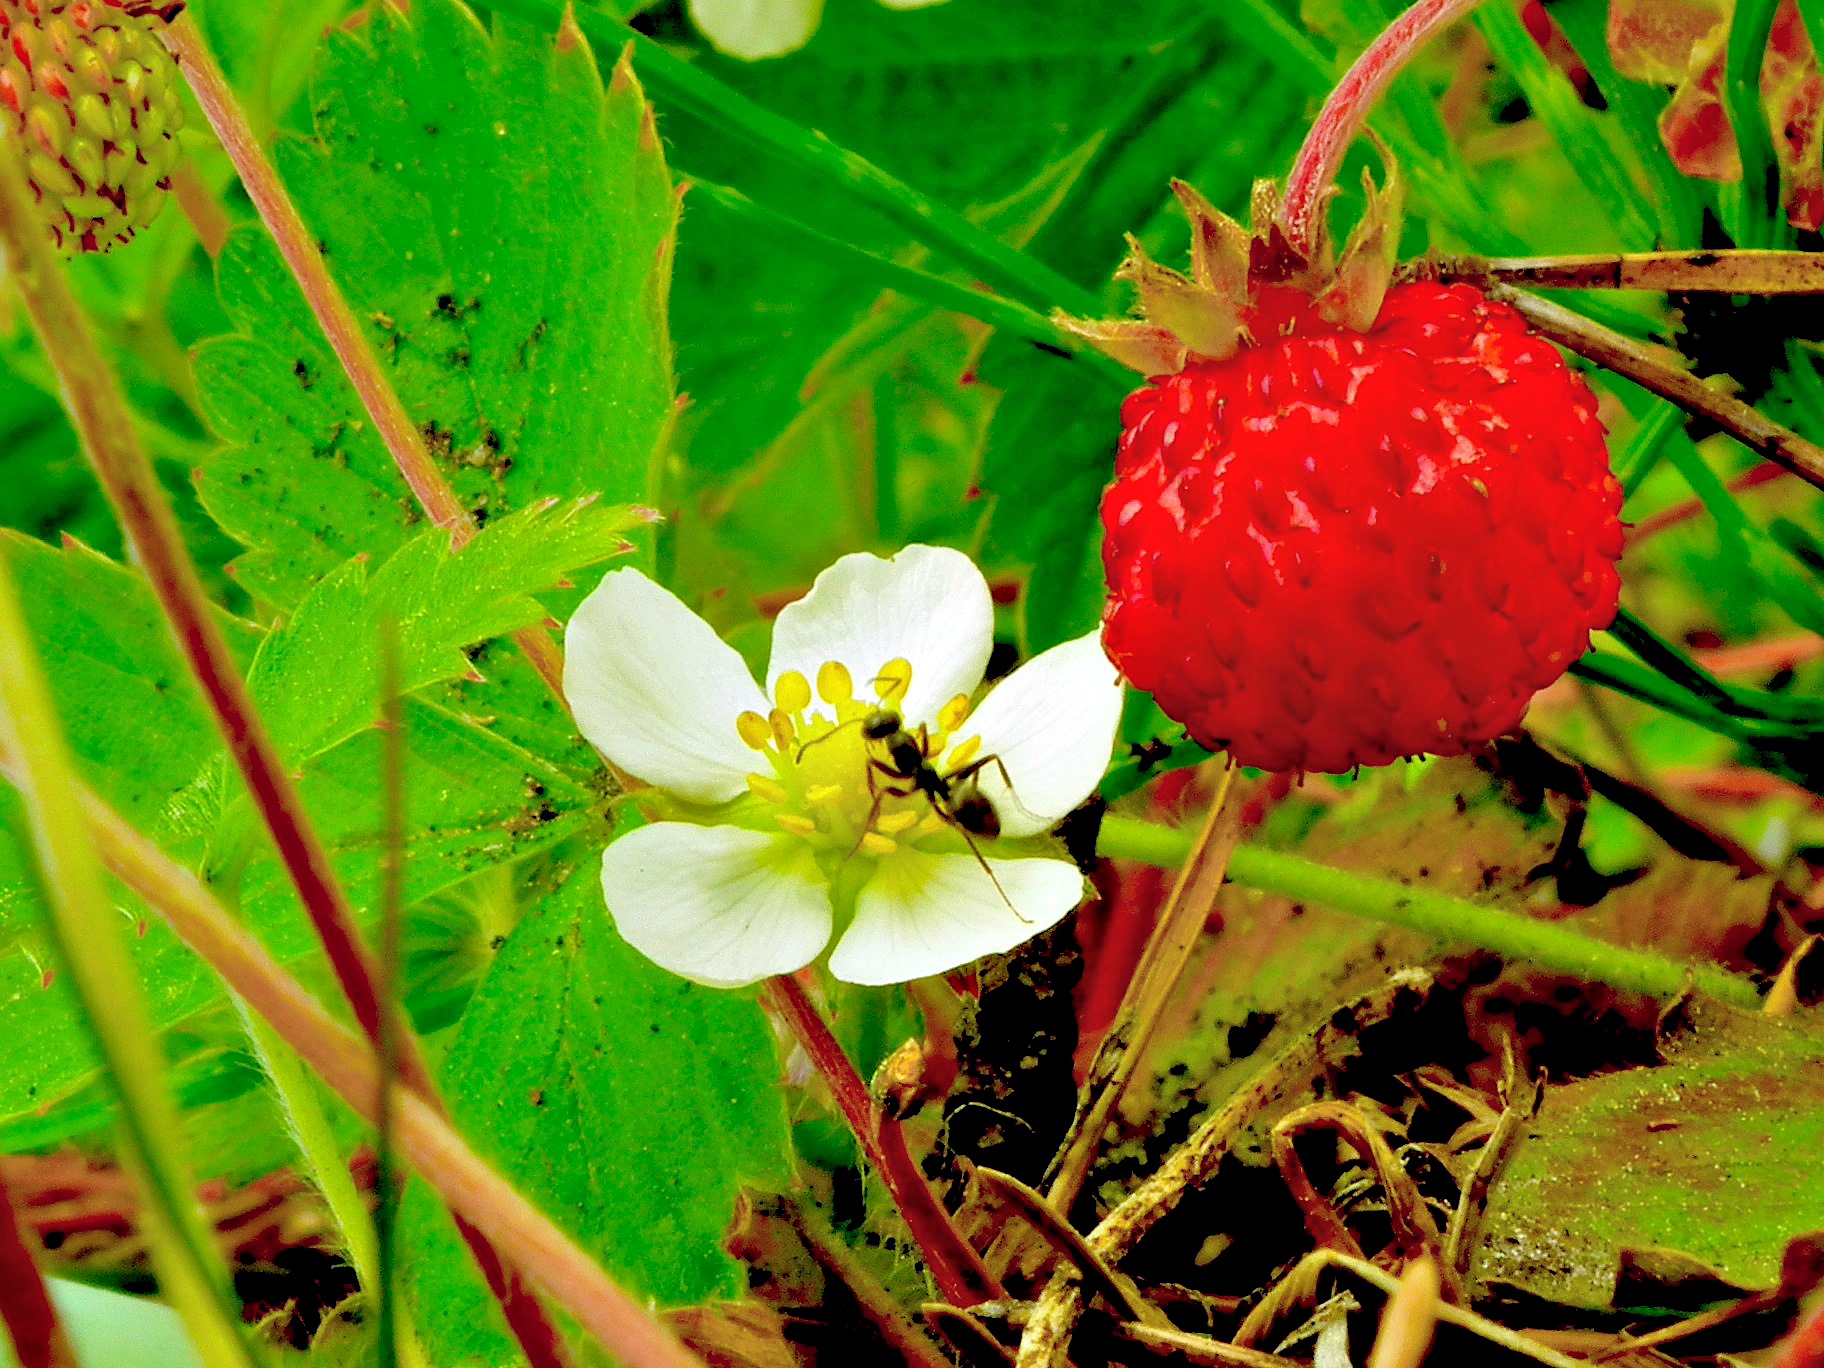 Как избавиться от муравьев в клубнике: 10 способов для радикалов игуманистов - Всё о уходе и выращивании ягод: клубники, смородины, малины идругих культур